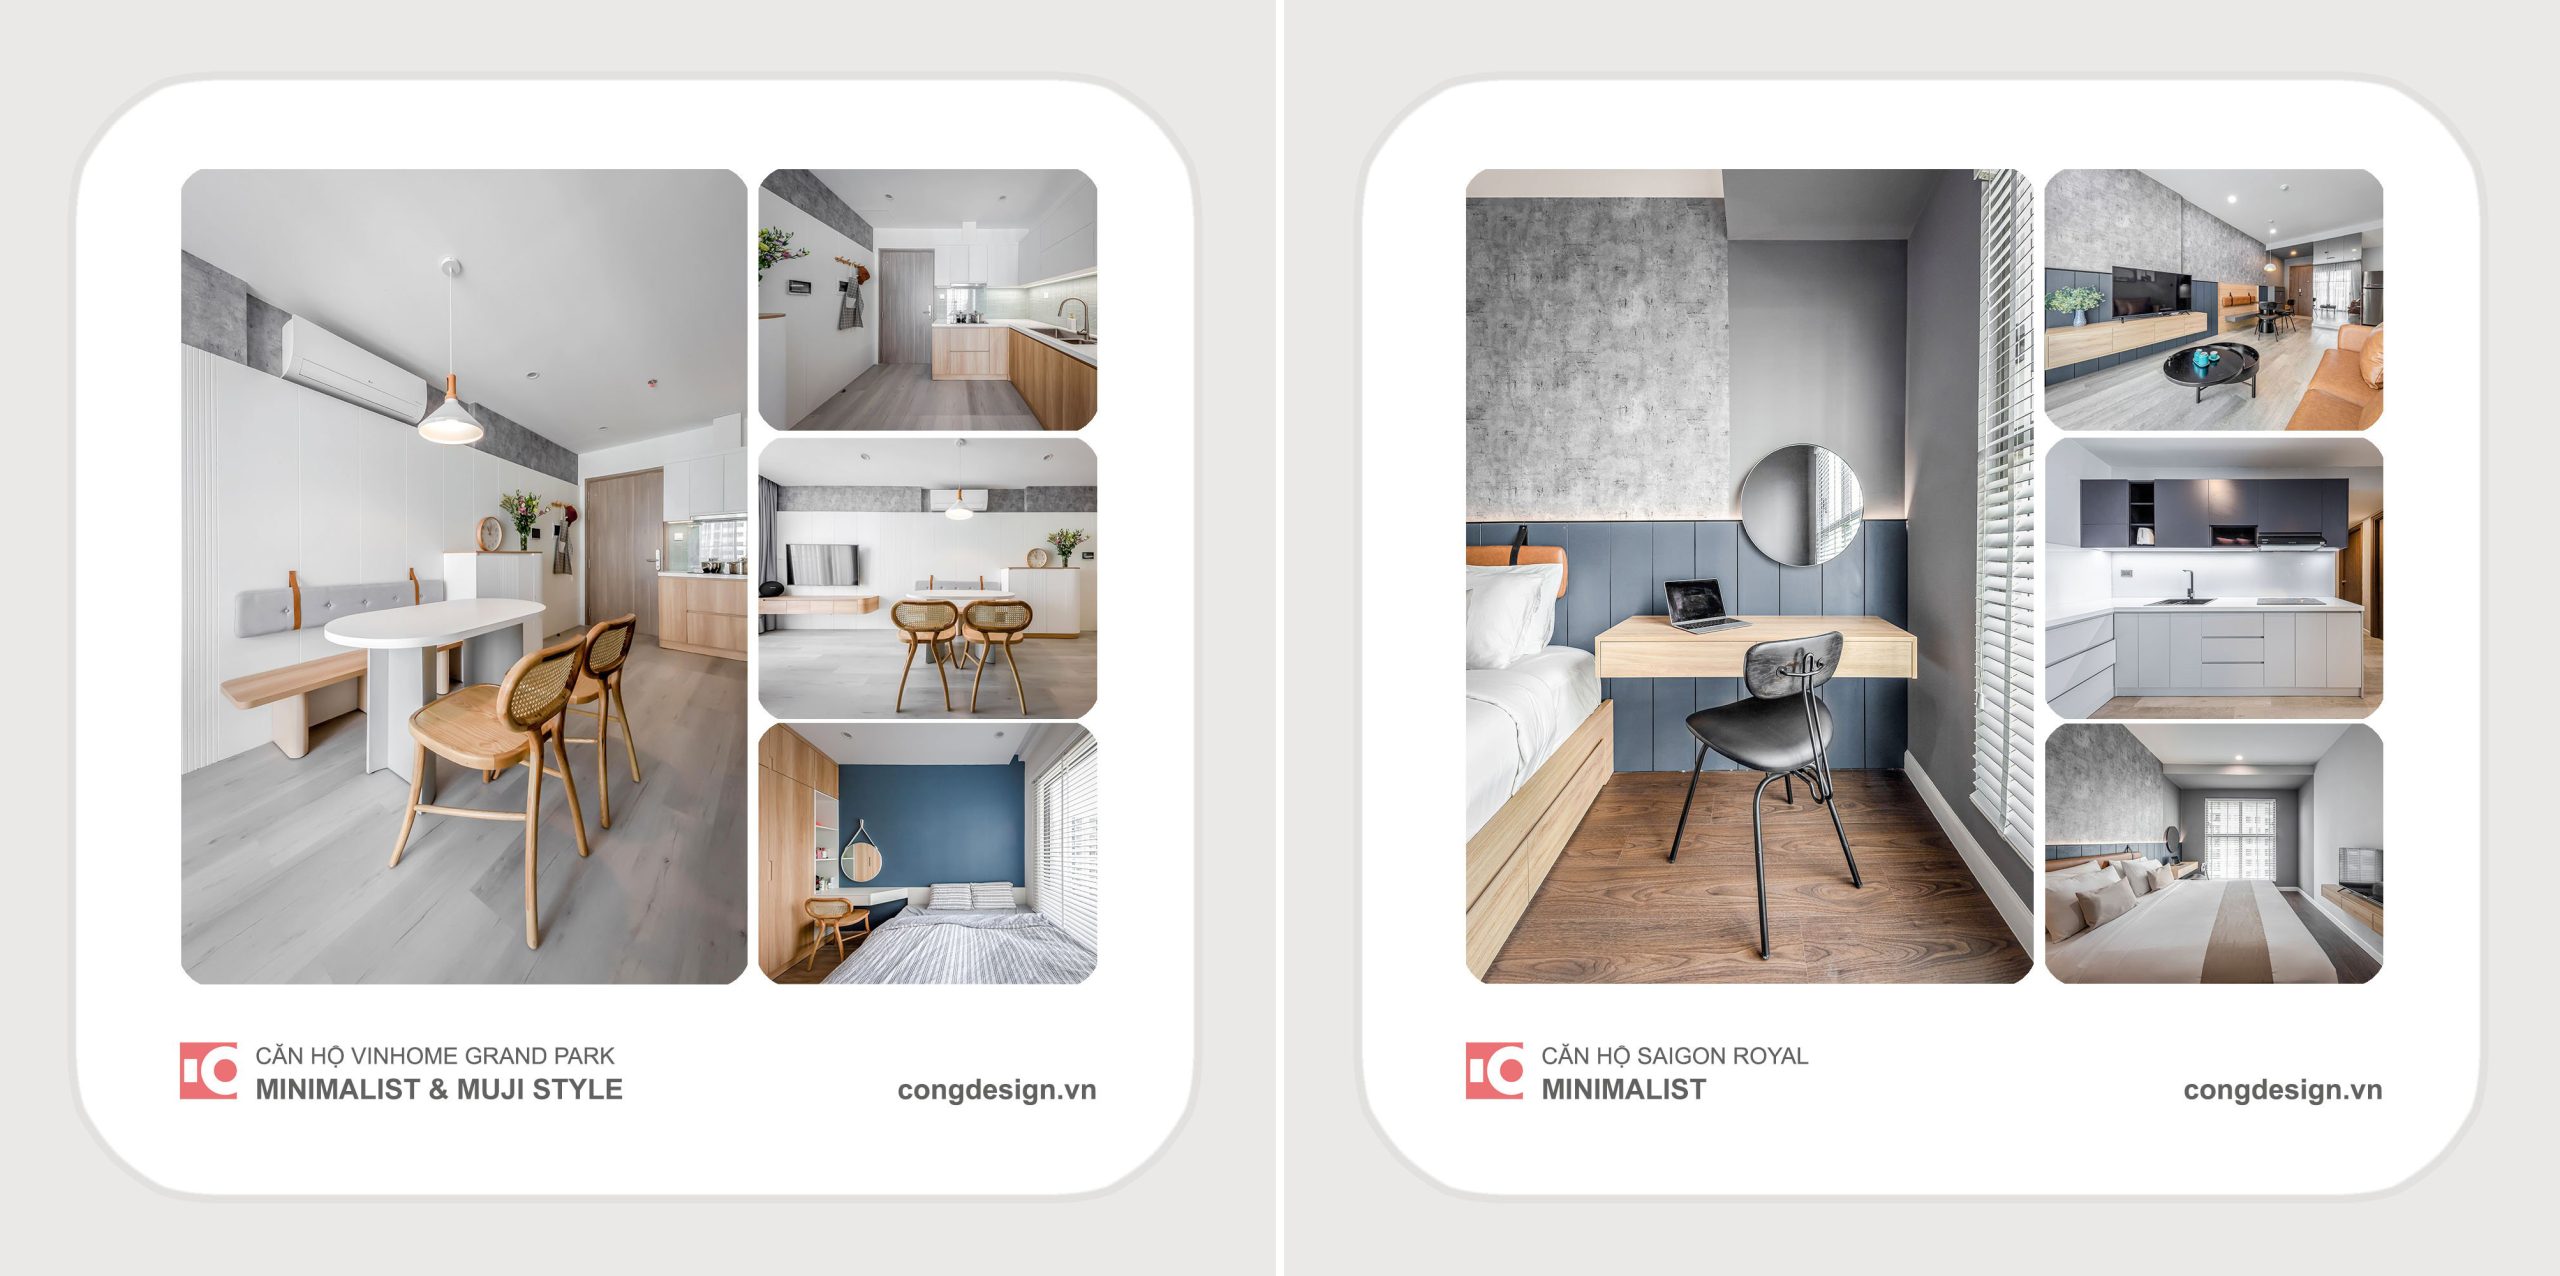 Hình ảnh thi công nội thất căn hộ chung cư Cộng Design